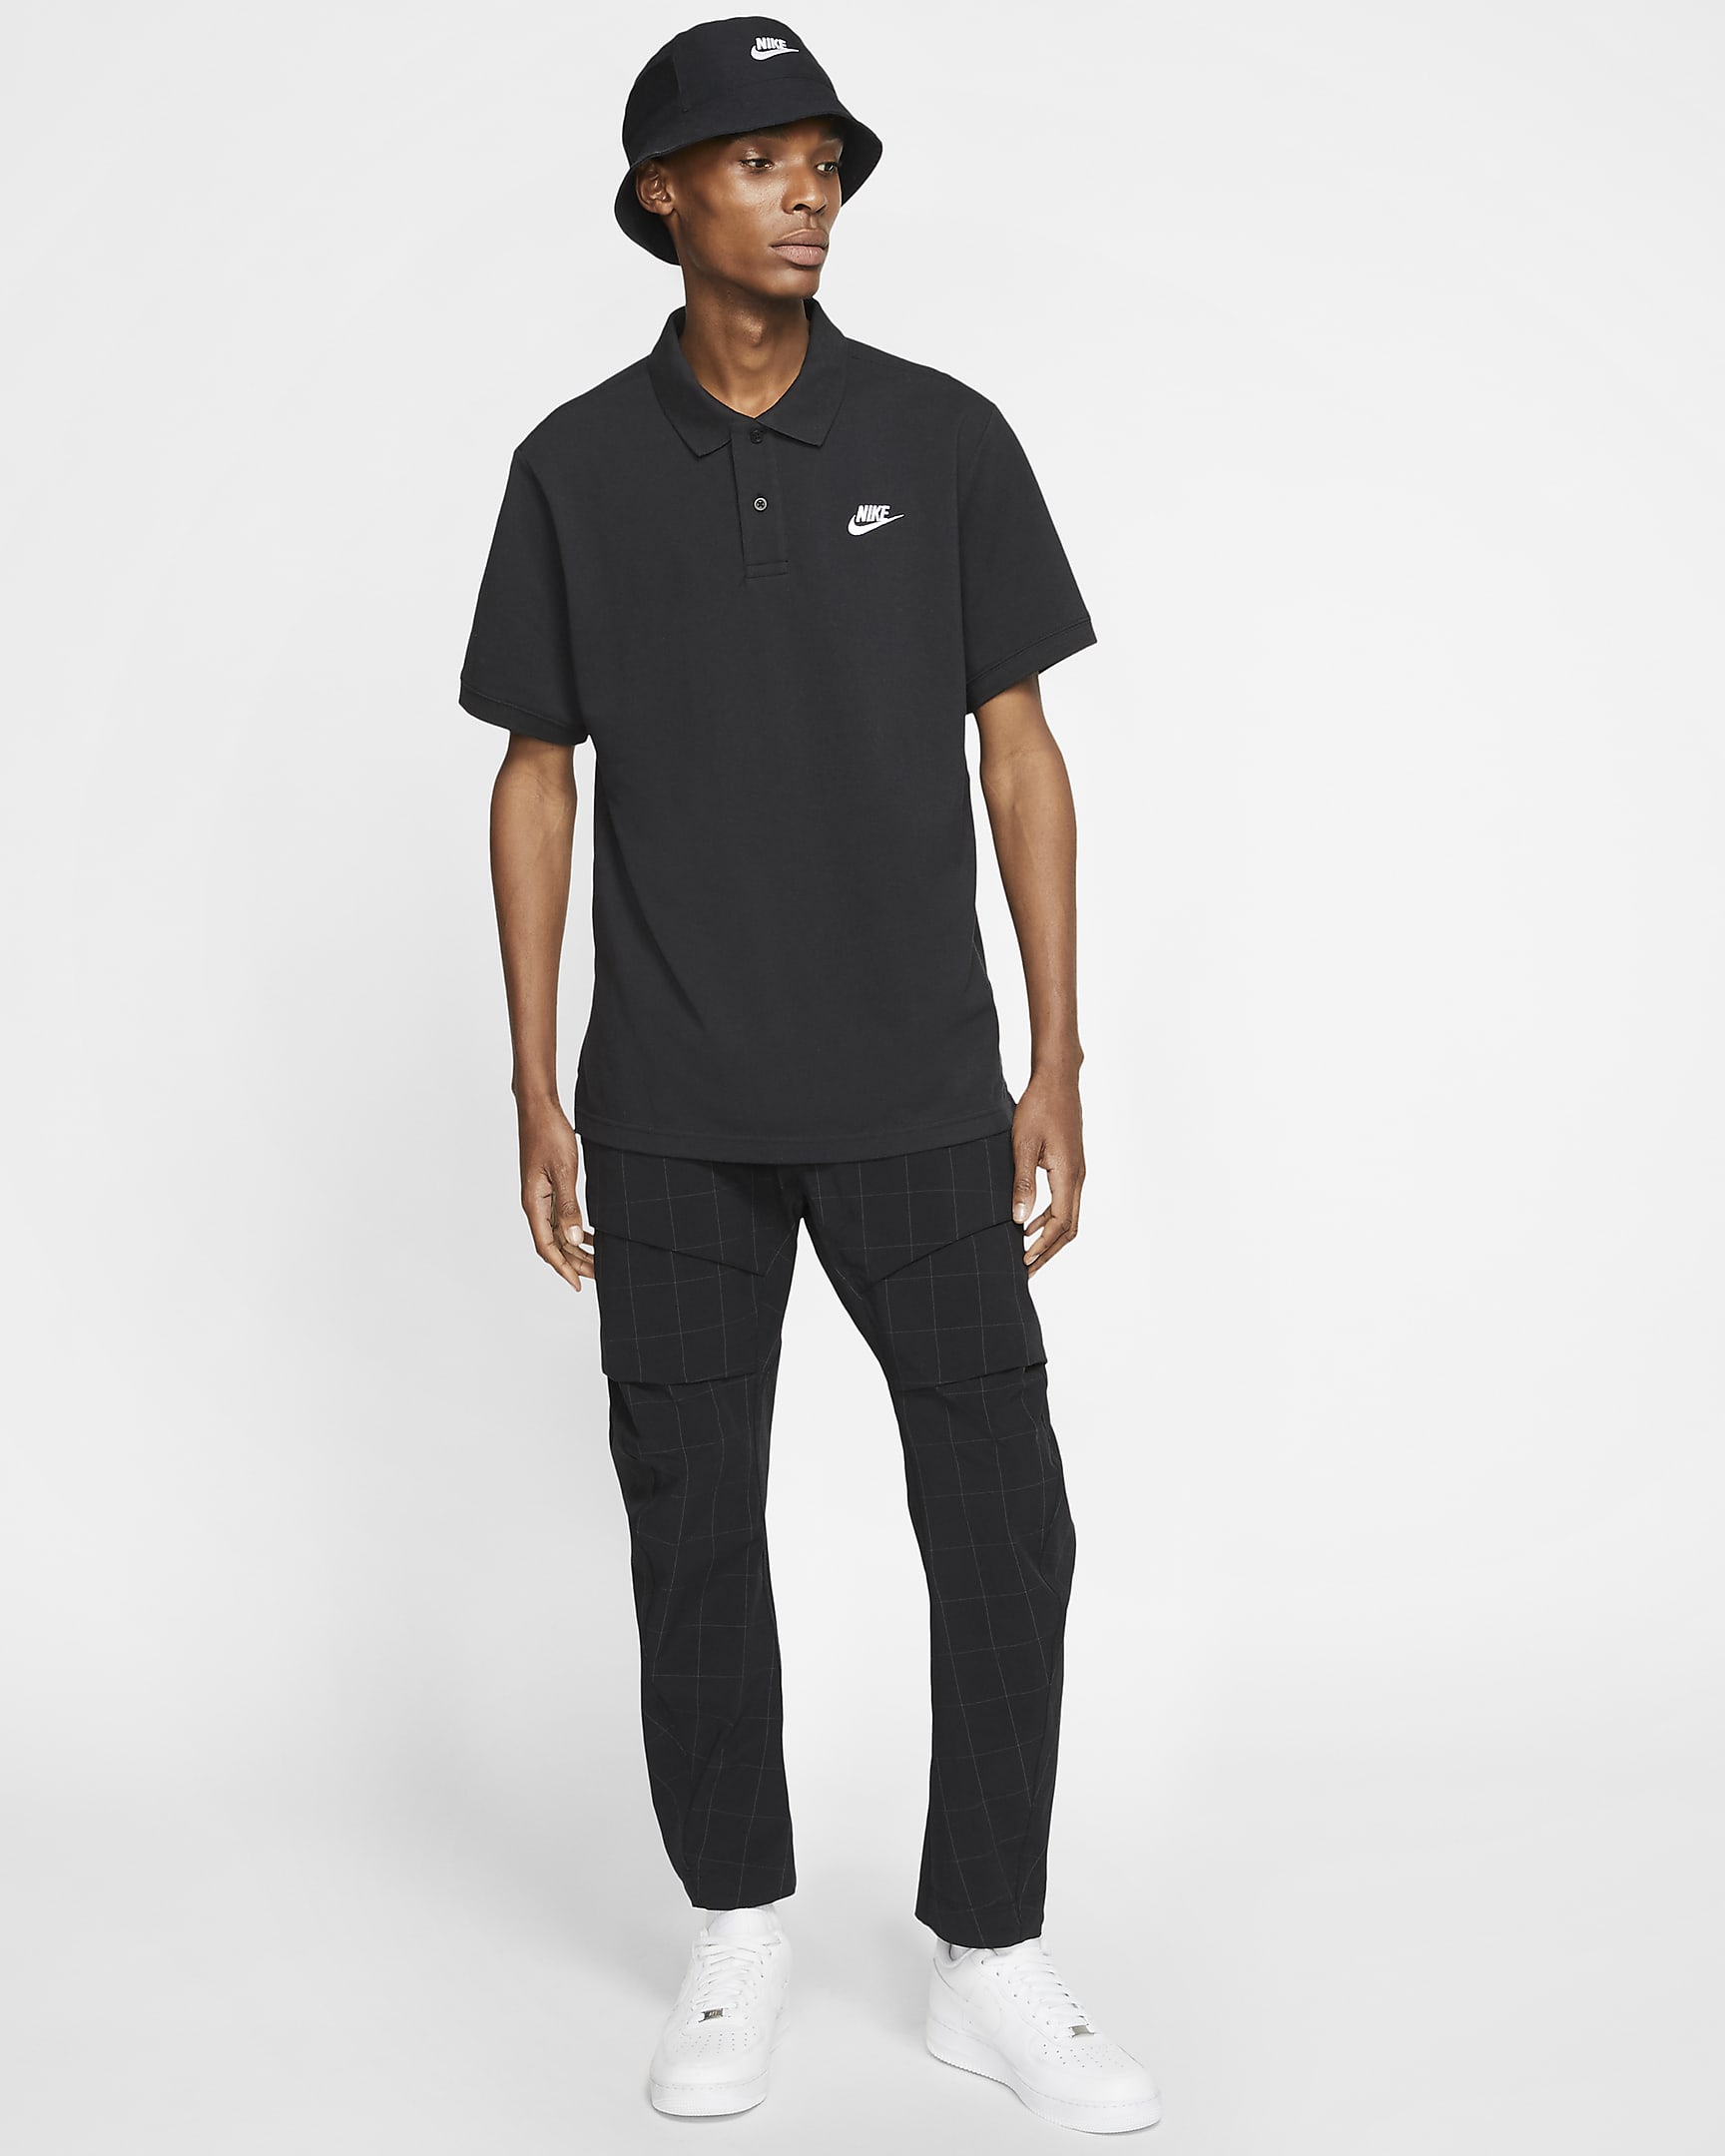 Polo Nike Sportswear para homem - Preto/Branco